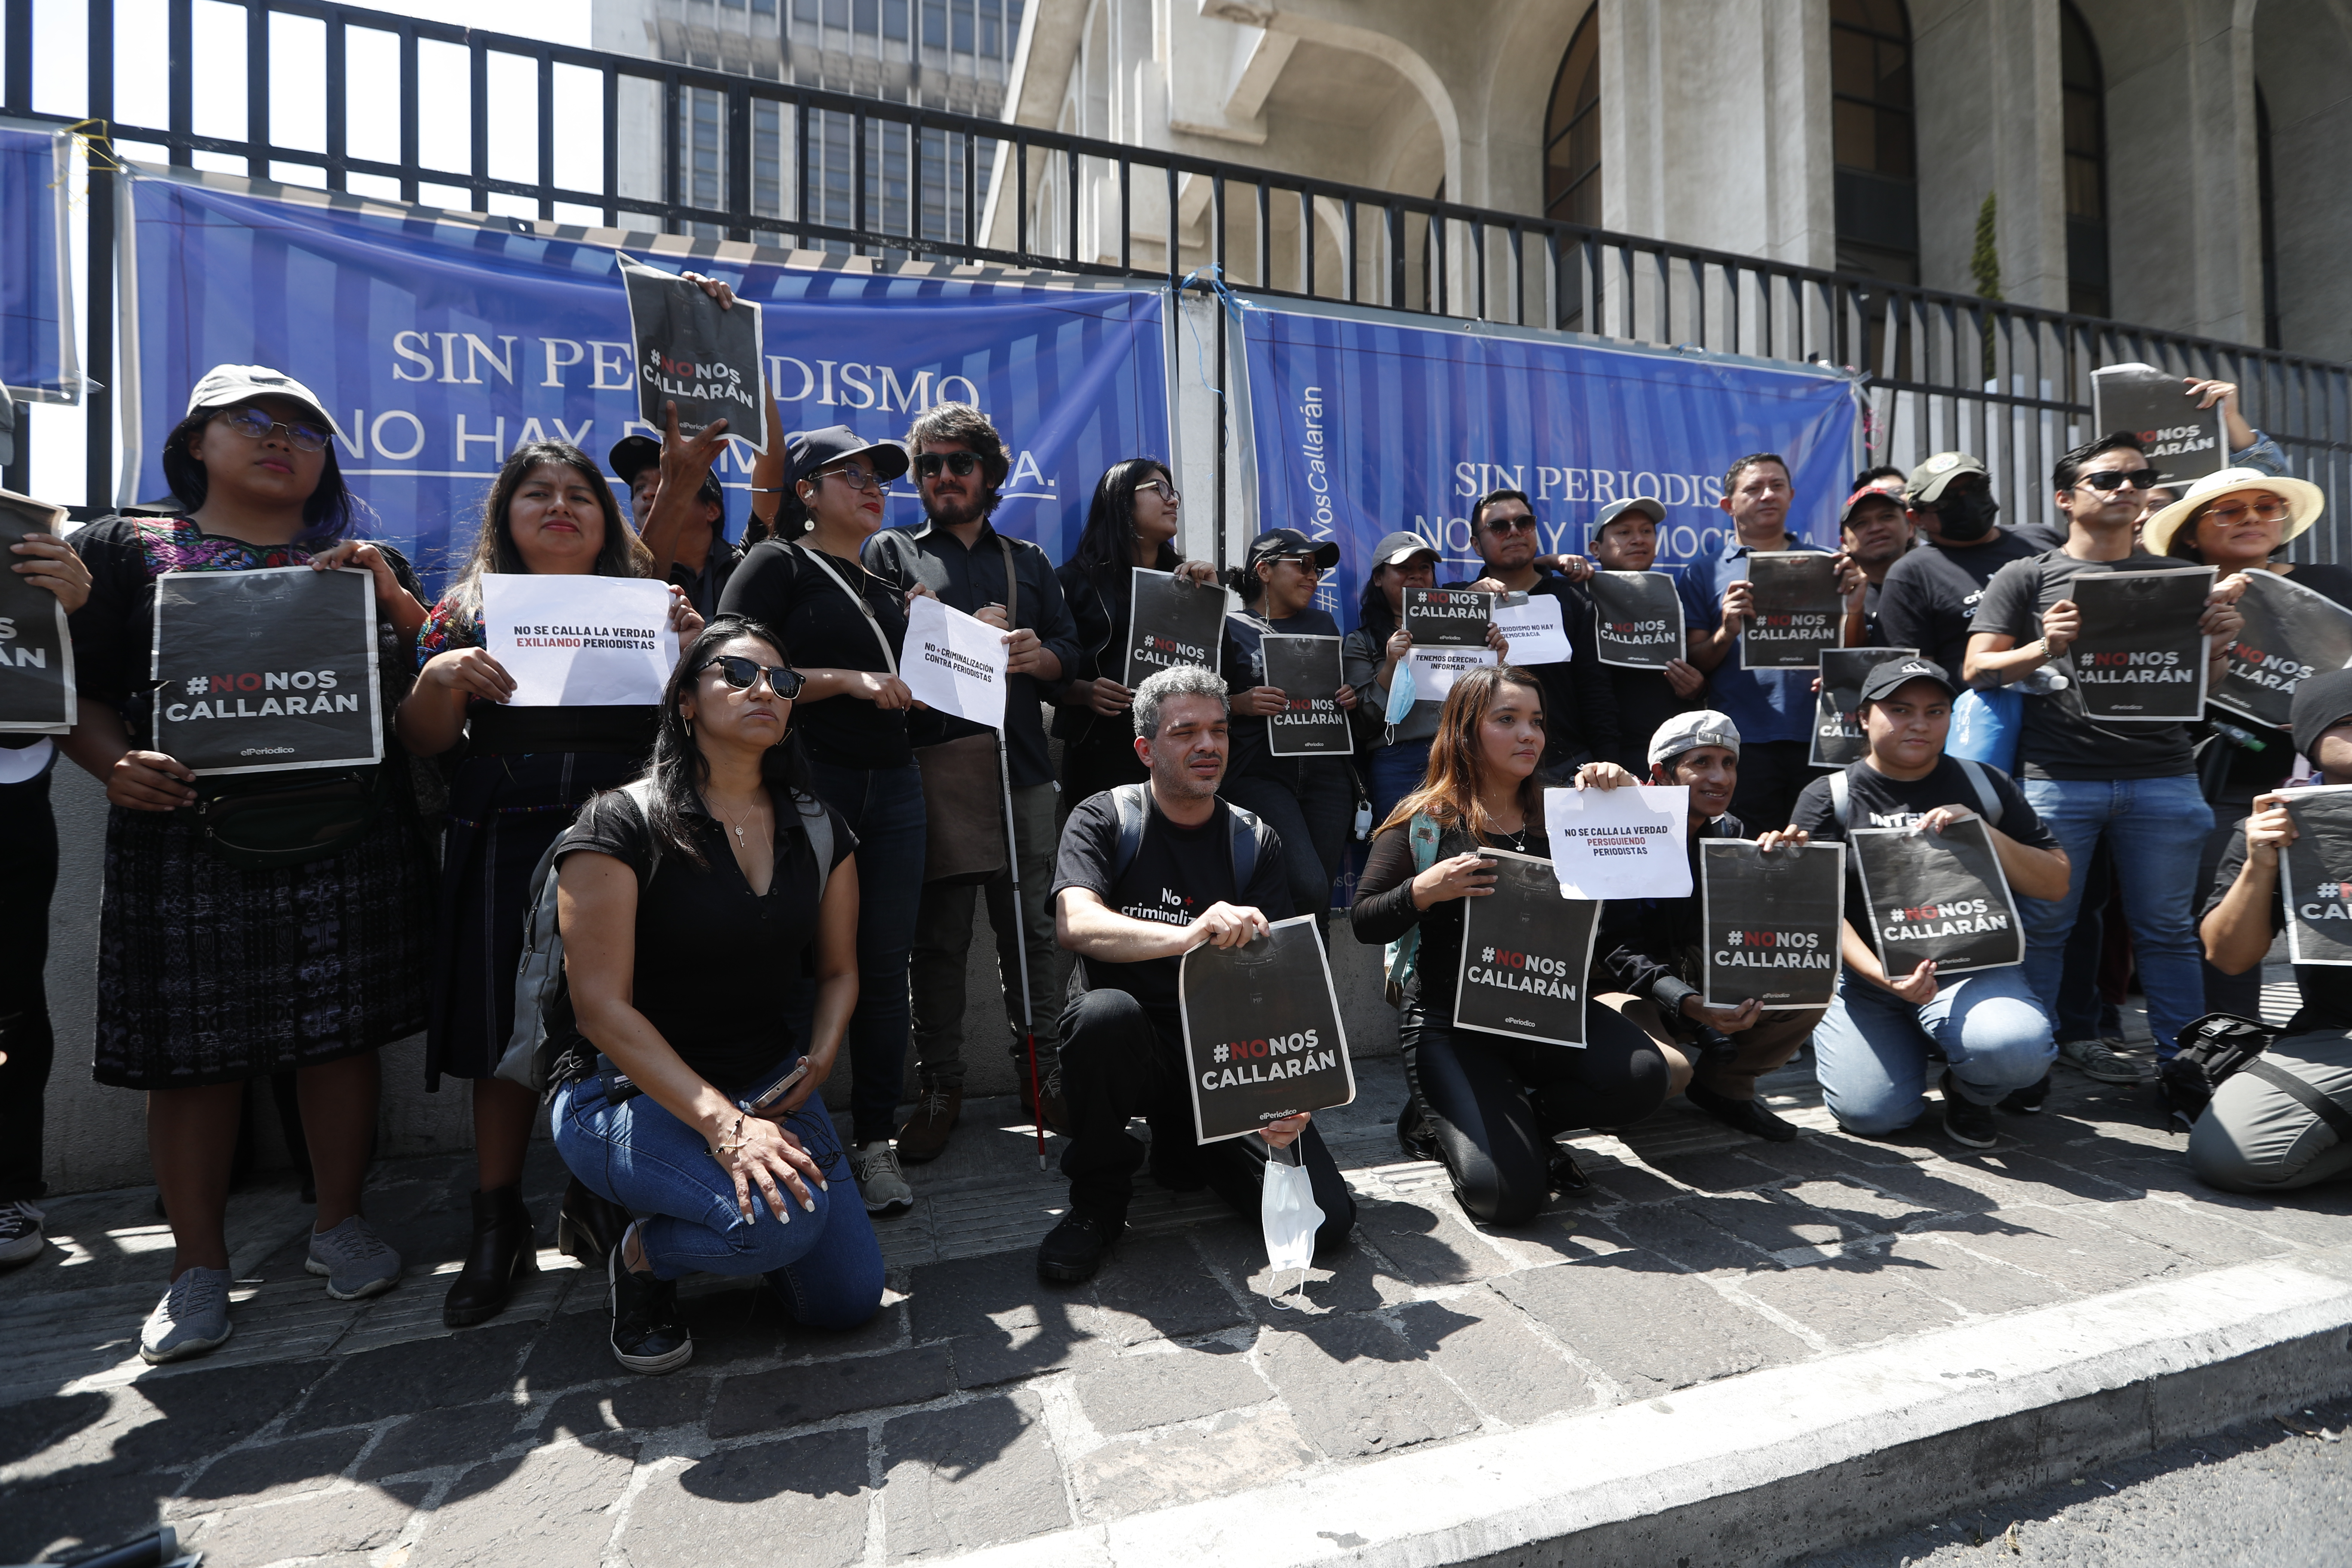 Periodistas y activistas protestan contra la censura y la persecución a periodistas en Guatemala, el pasado 4 de marzo de 2023. (Foto Prensa Libre: HemerotecaPL)

Fotografía Prensa Libre: María José Bonilla
Fecha: 04/03/2023